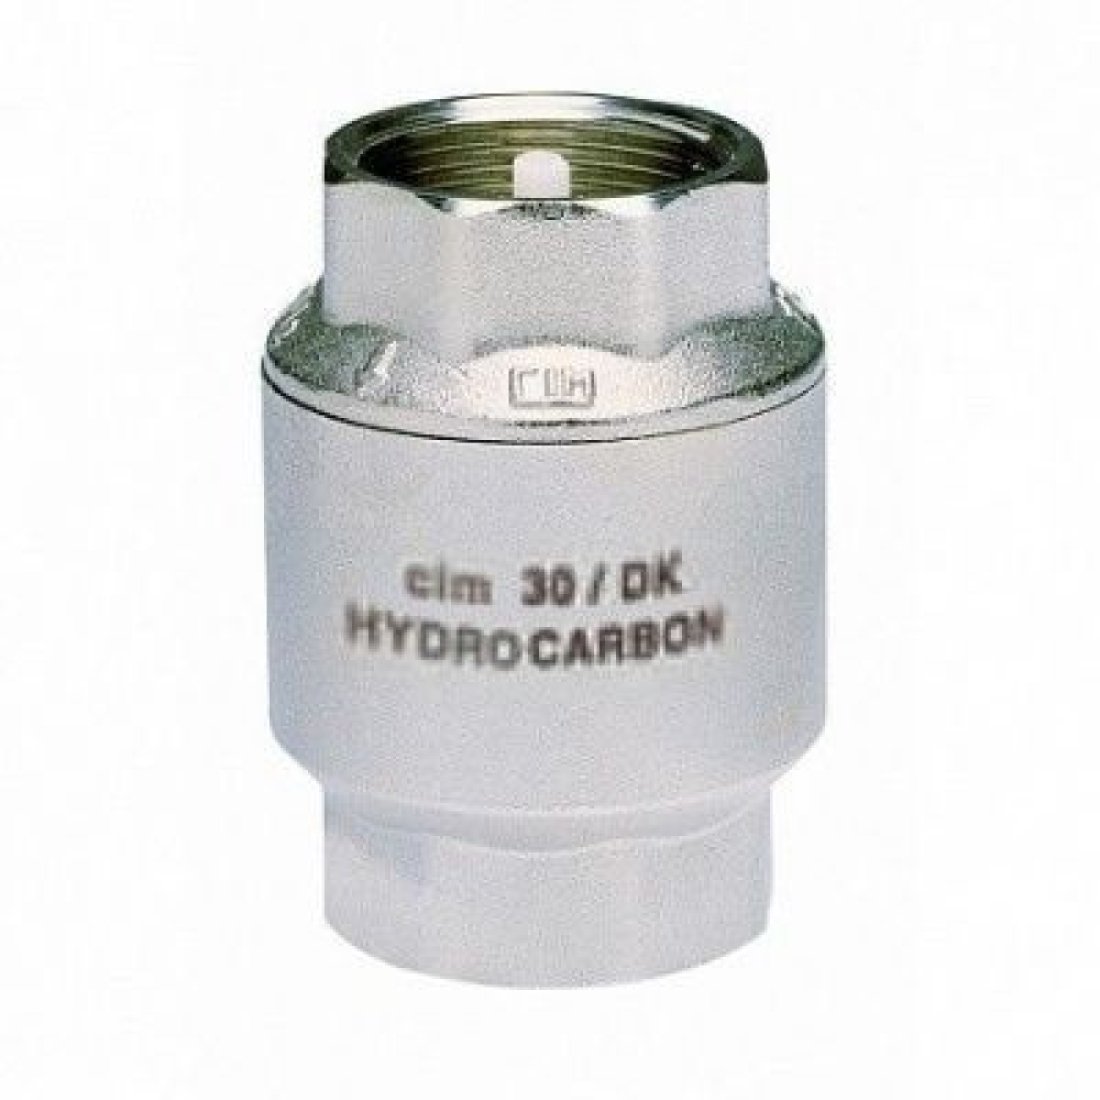 Клапан обратный пружинный 30DK 1.1/4"для углеводородов PN20 ВВ Cimberio